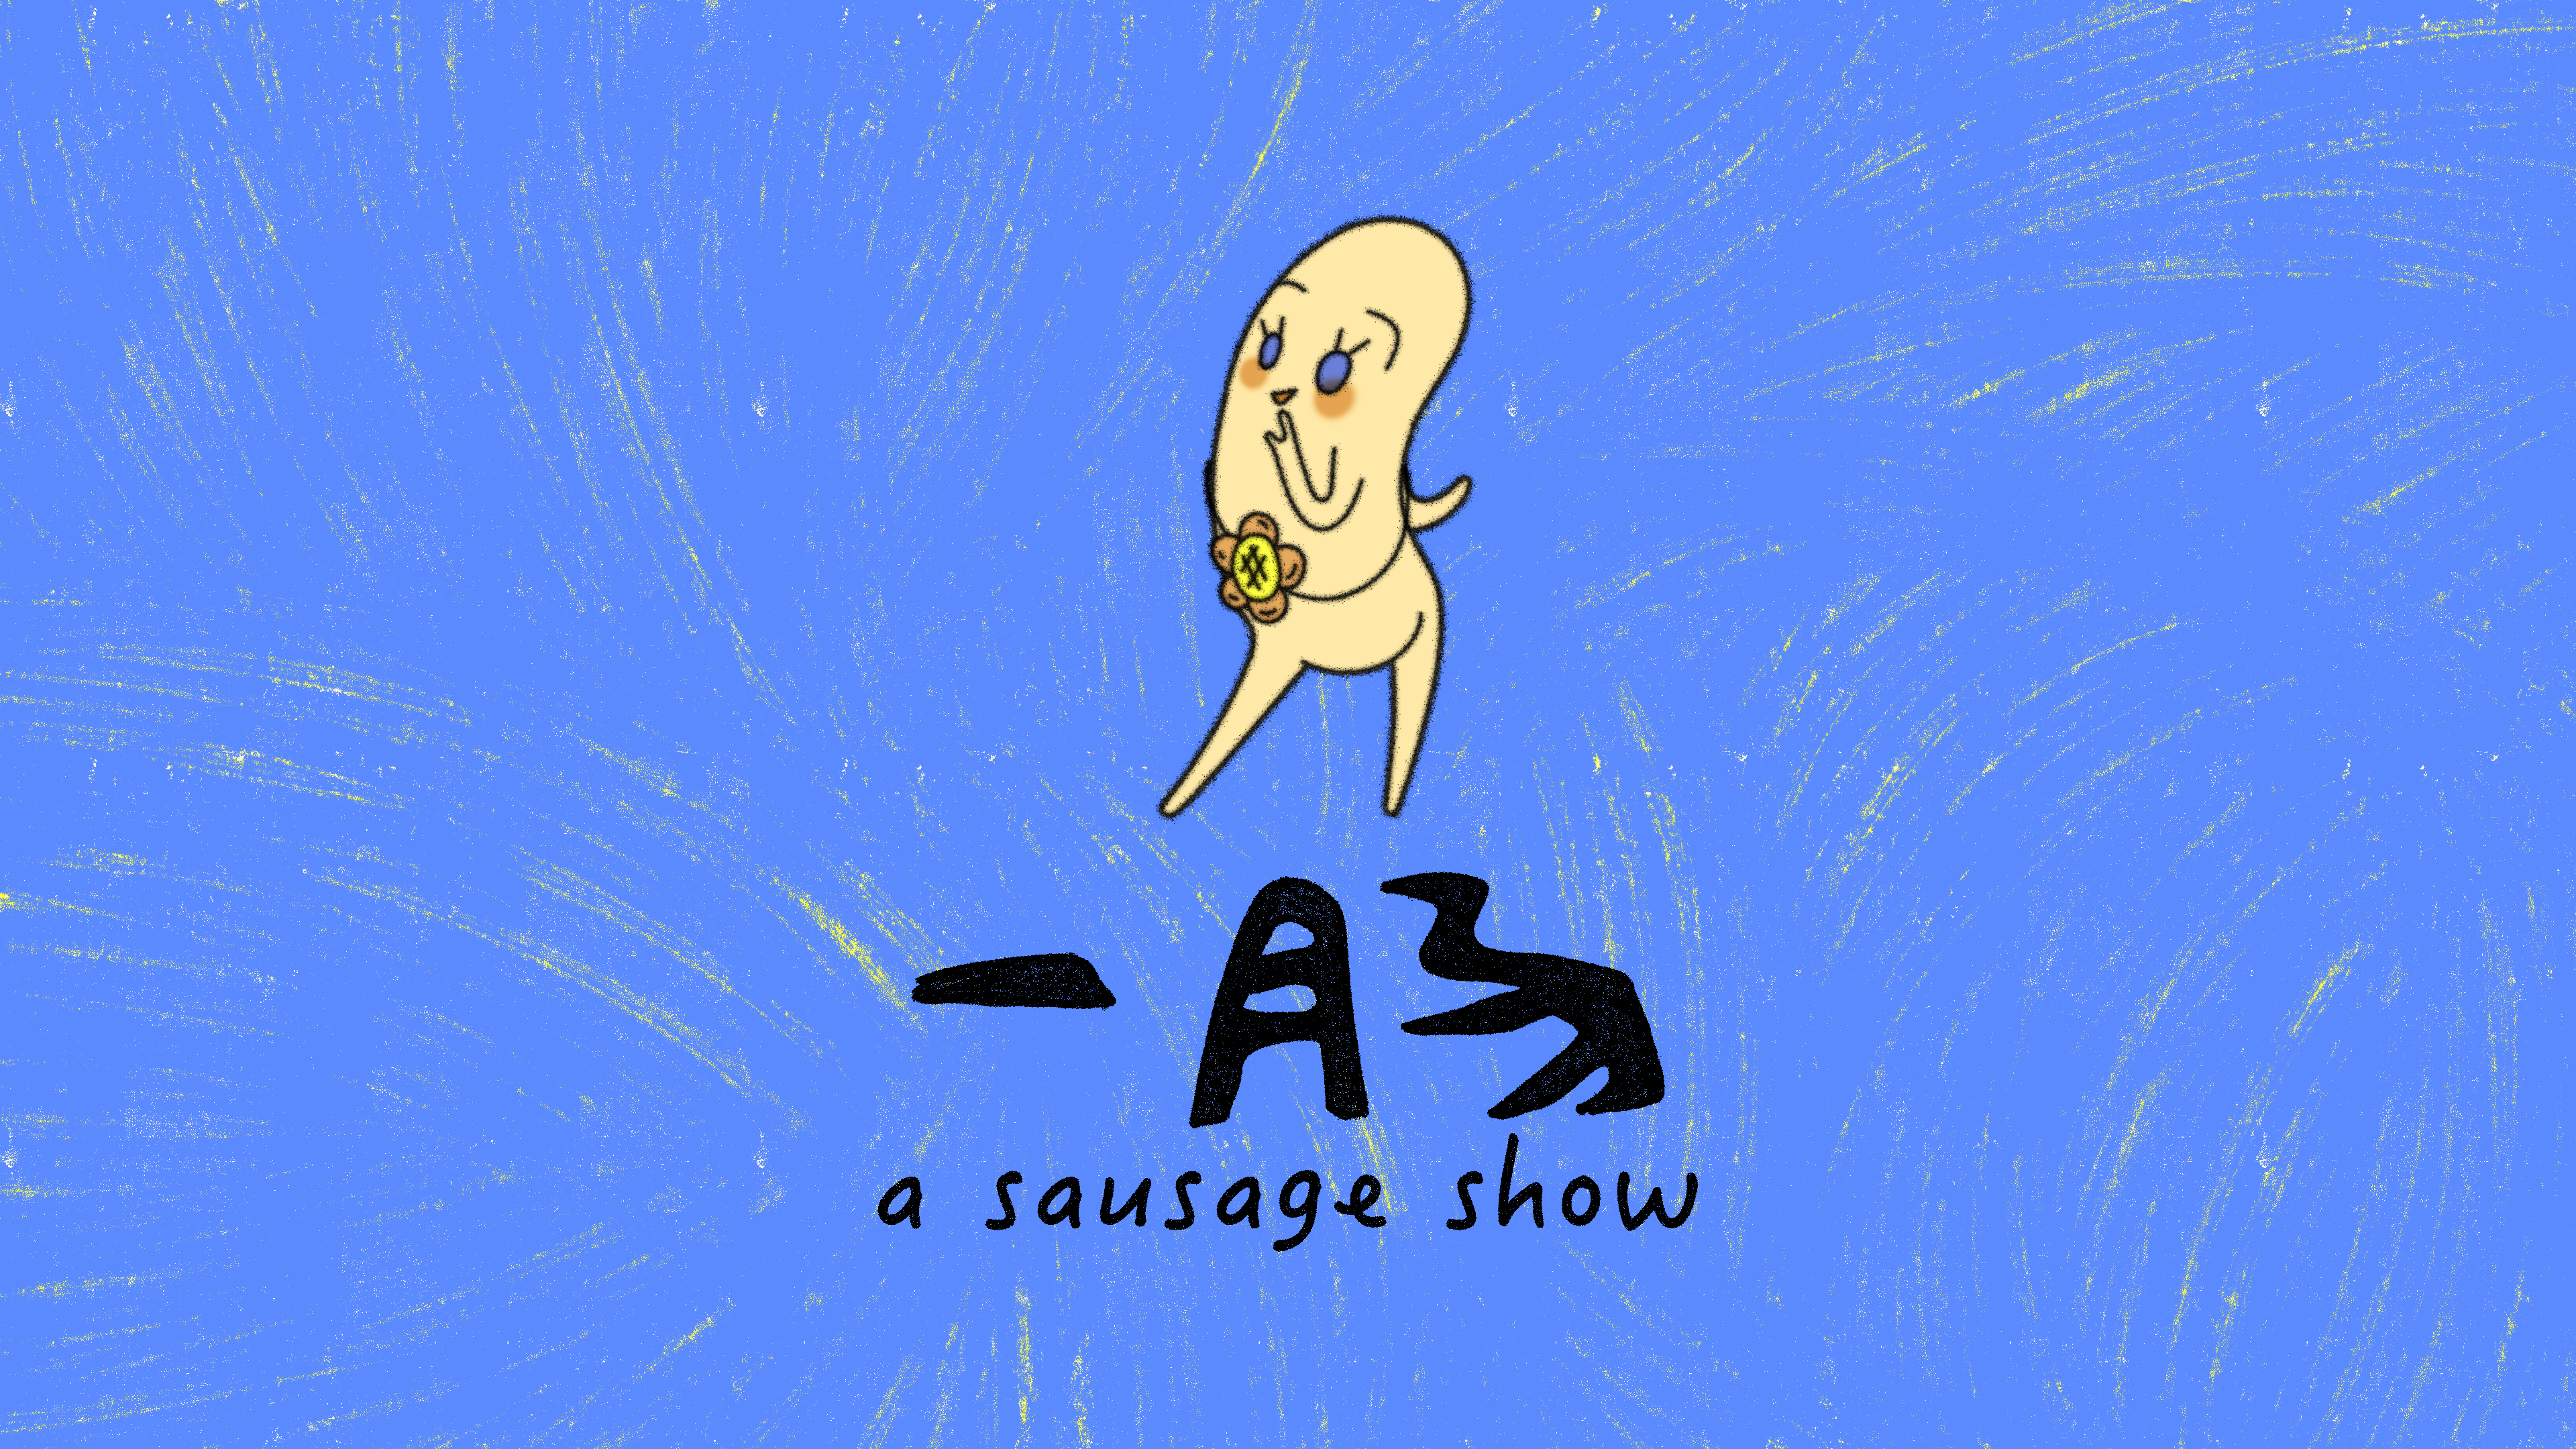 A Sausage Show